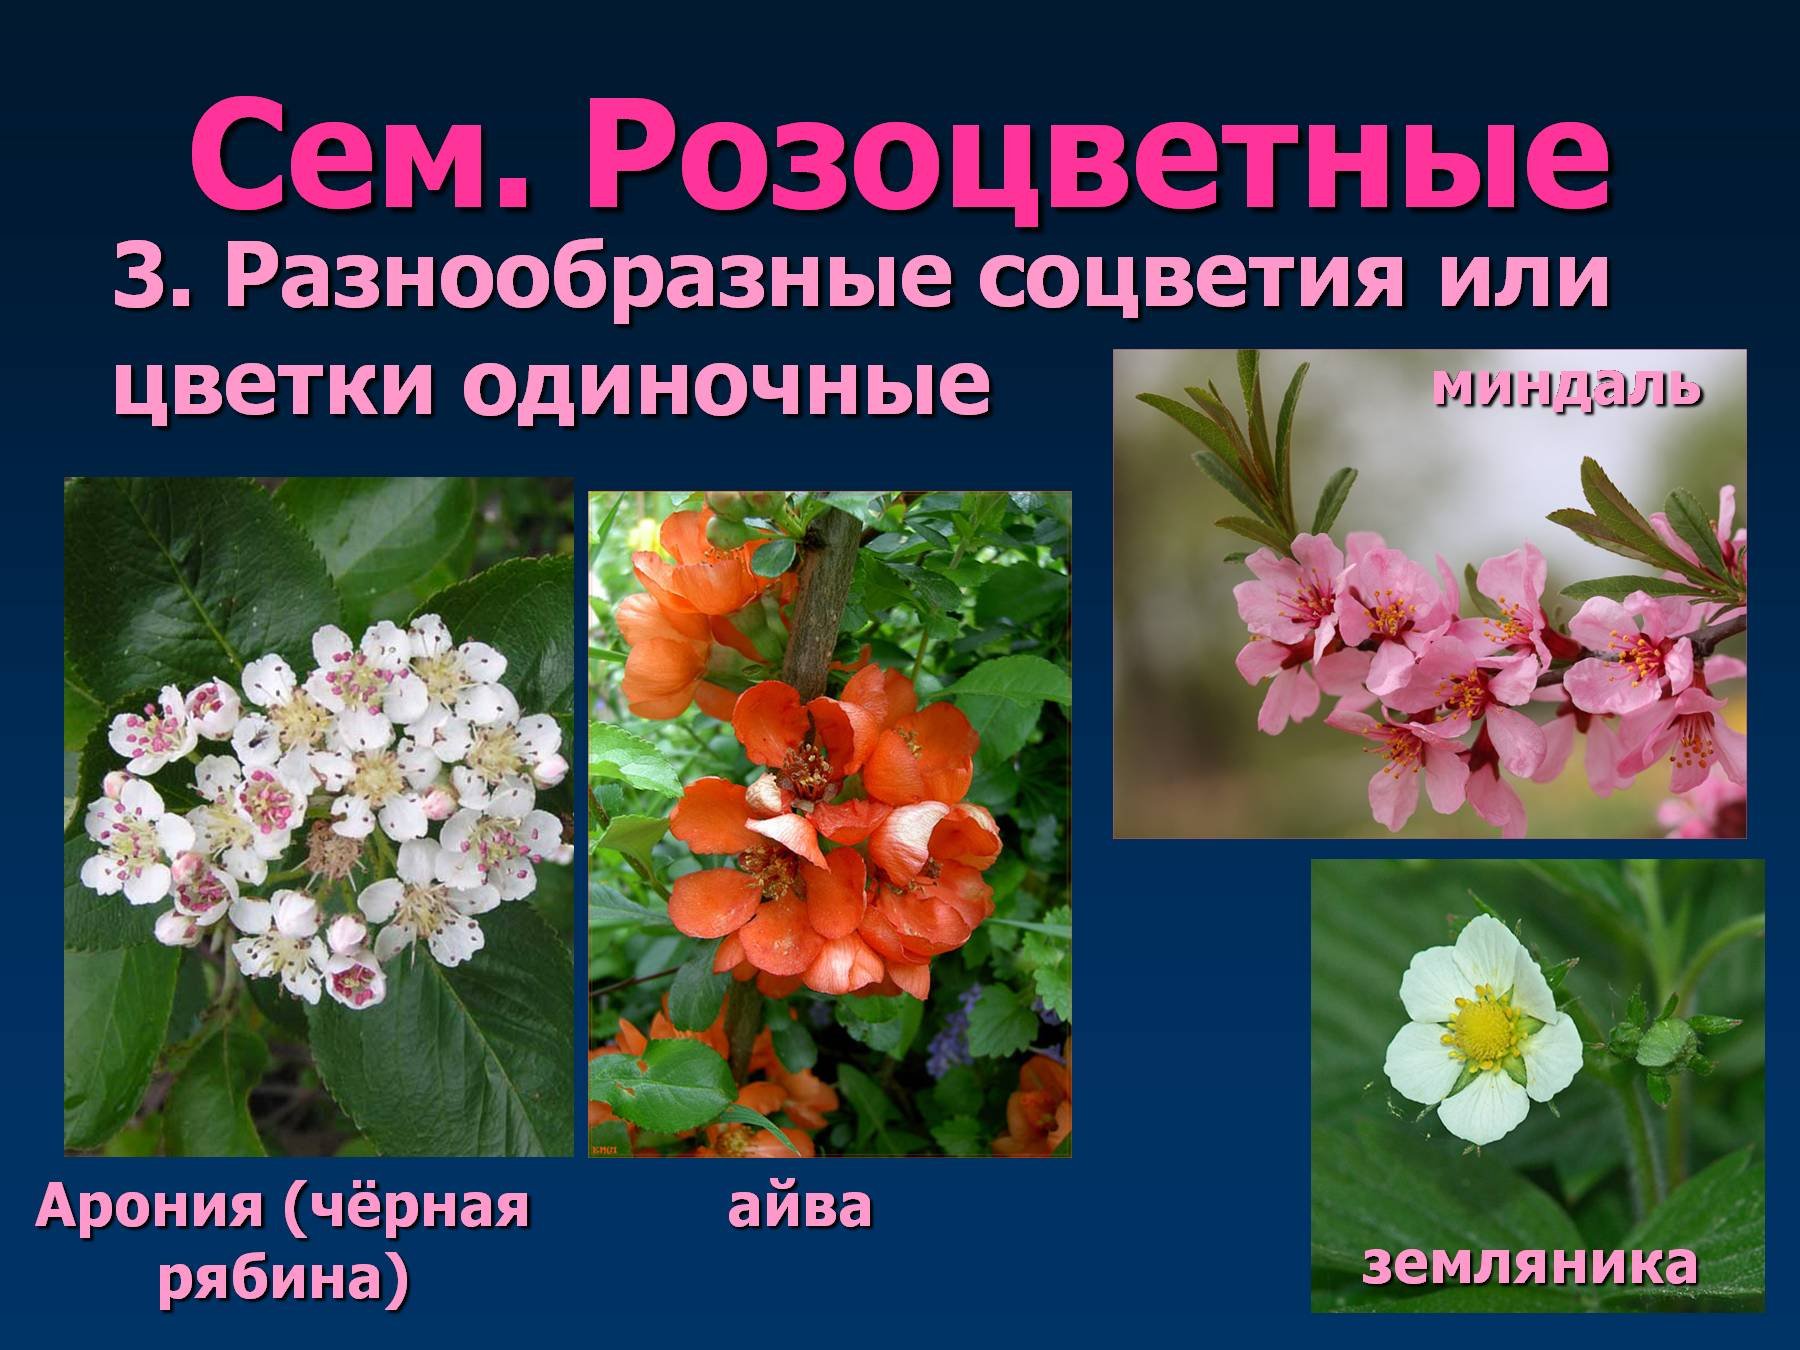 Многообразие цветковых. Покрытосеменные Розоцветные растения. Розоцветные представители. Декоративные растения семейства розоцветных. Семейство Розоцветные представители.